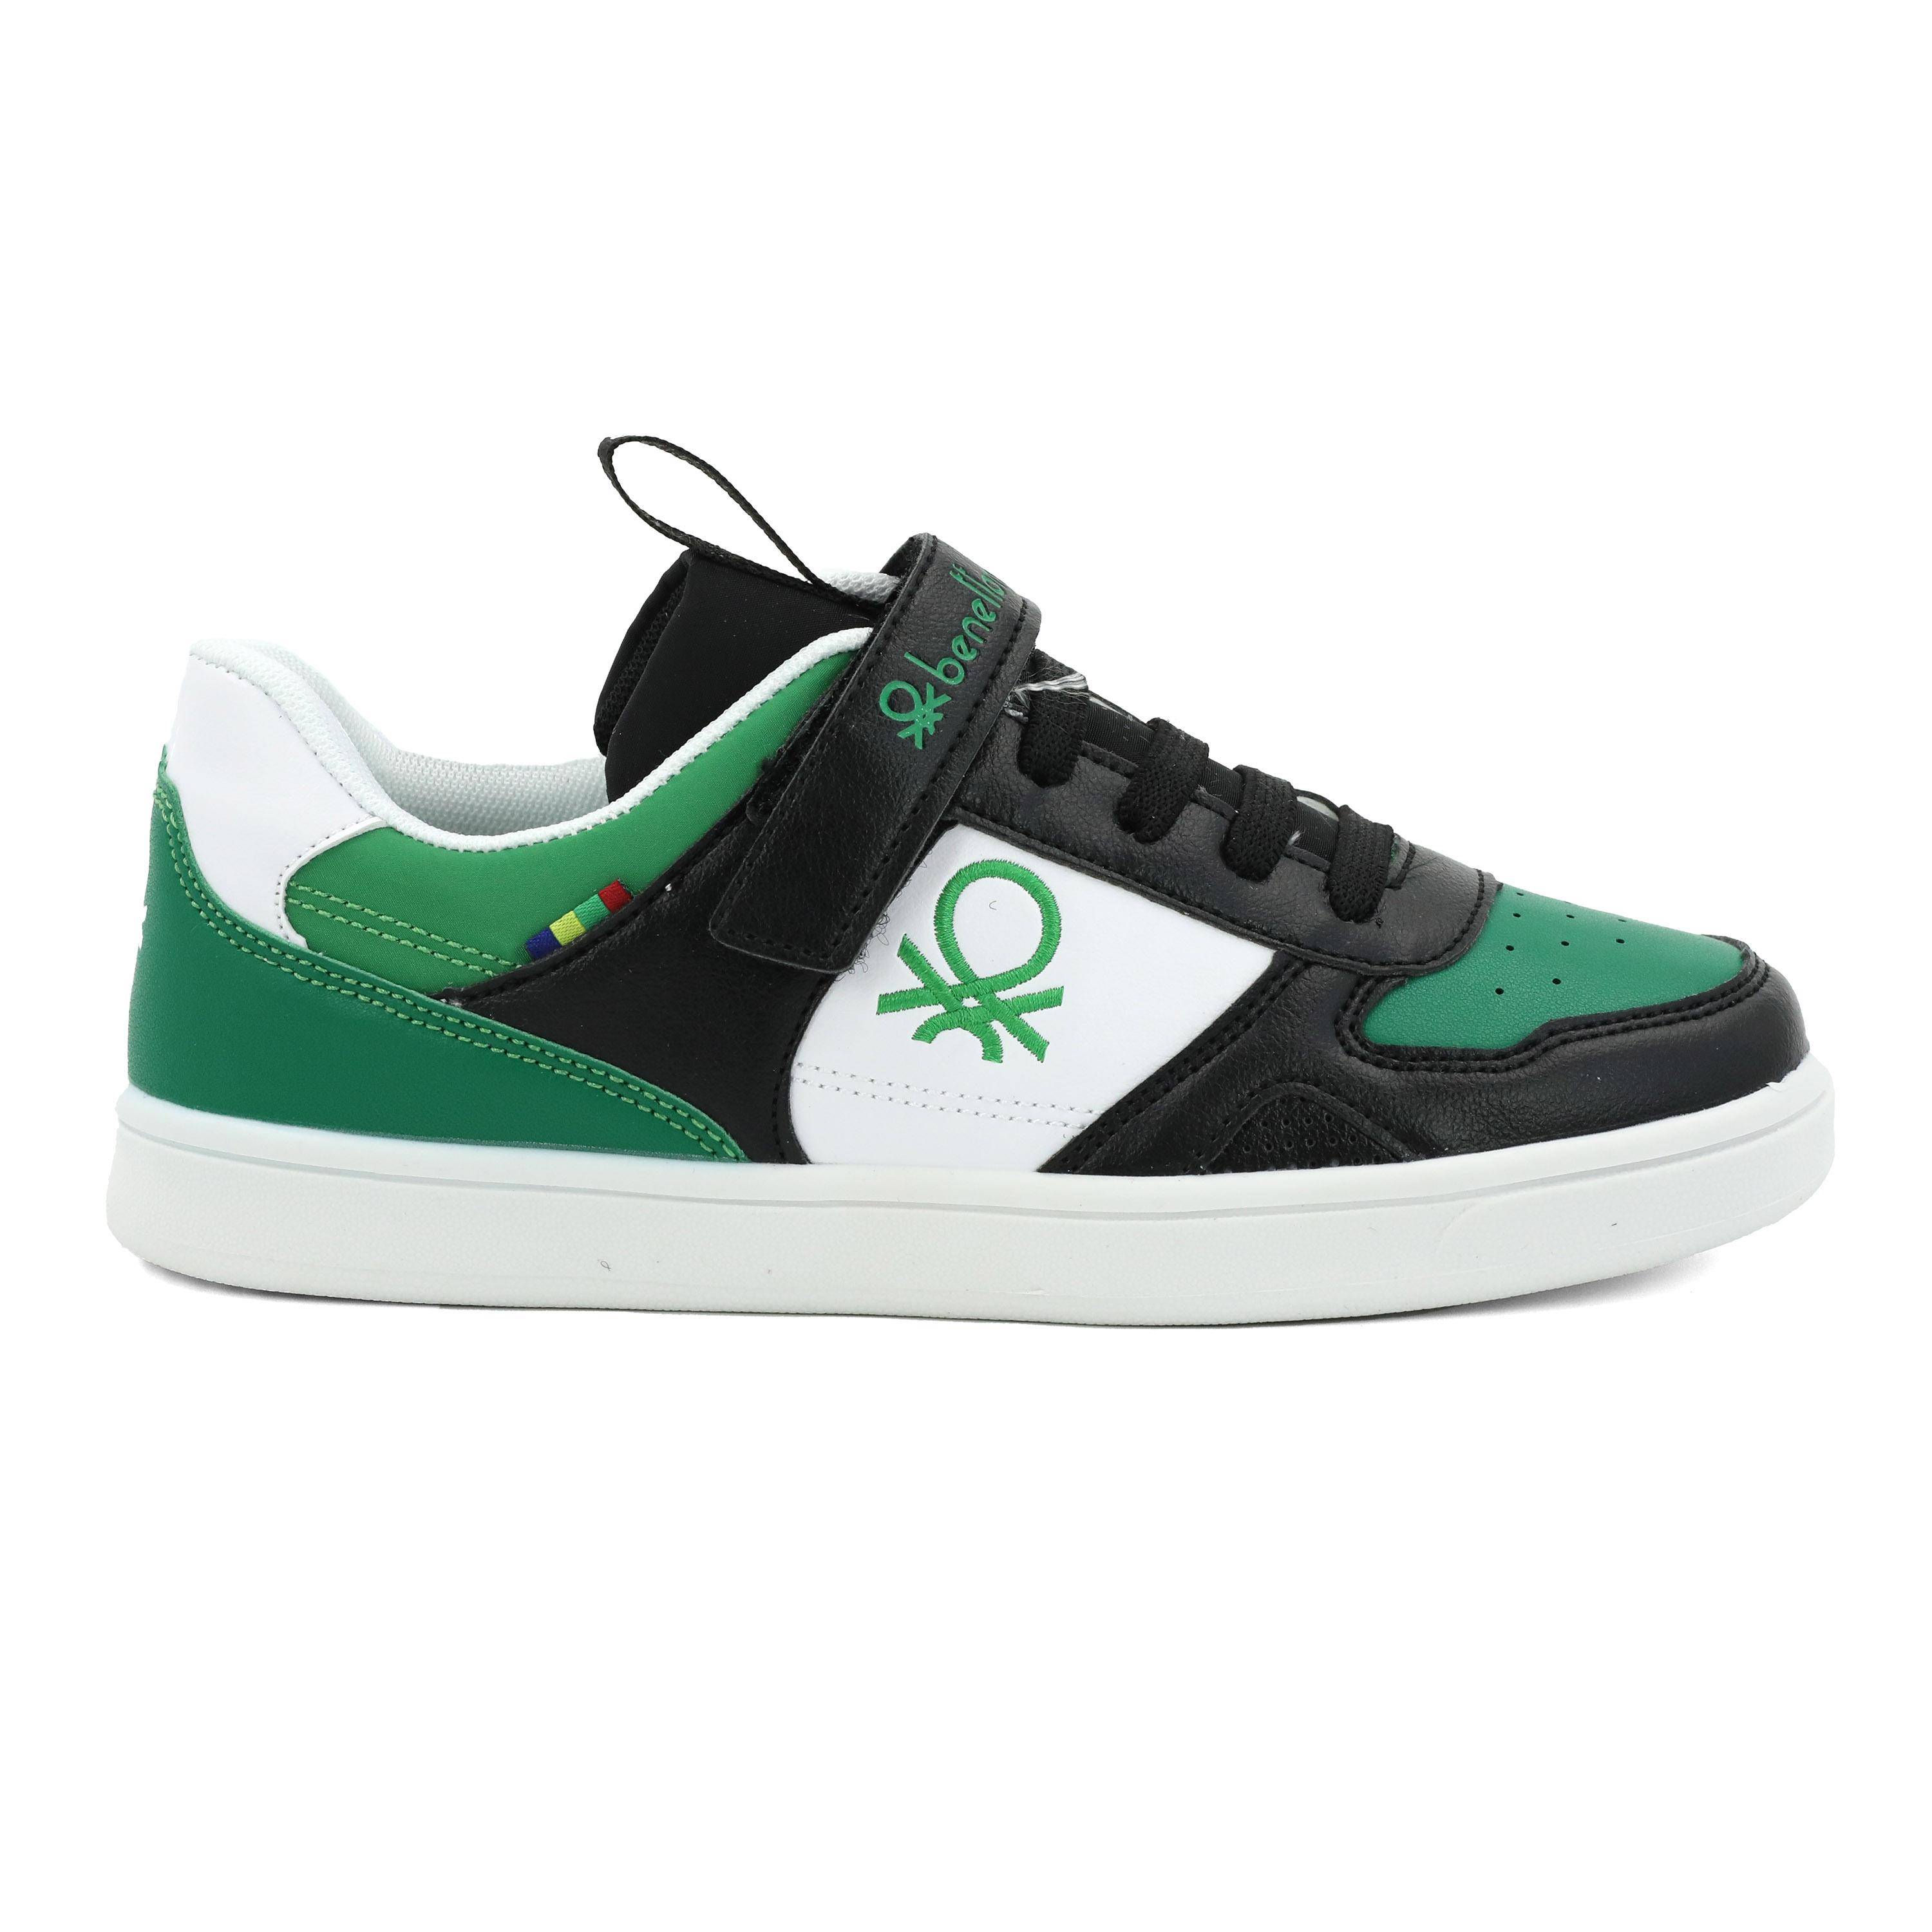 Детские кроссовки United Colors of Benetton, зеленые, цвет зеленый, размер 33 - фото 2